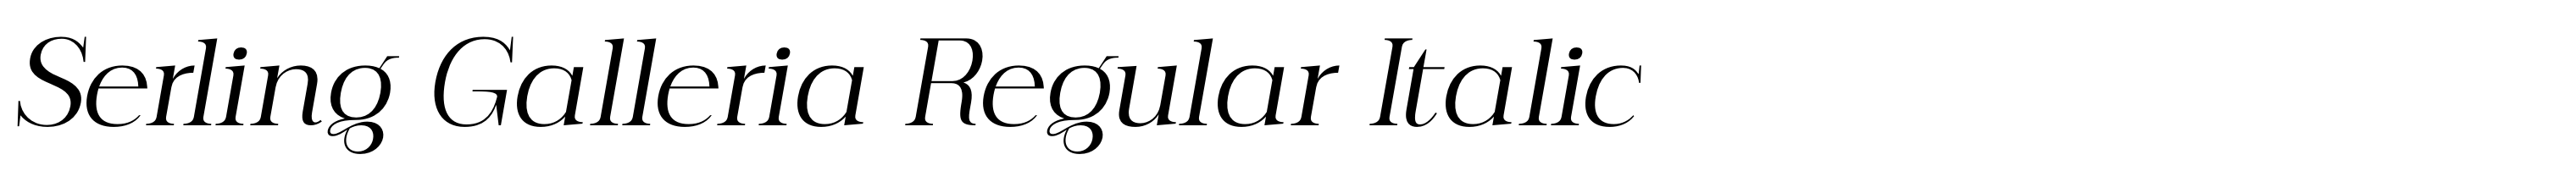 Serling Galleria Regular Italic